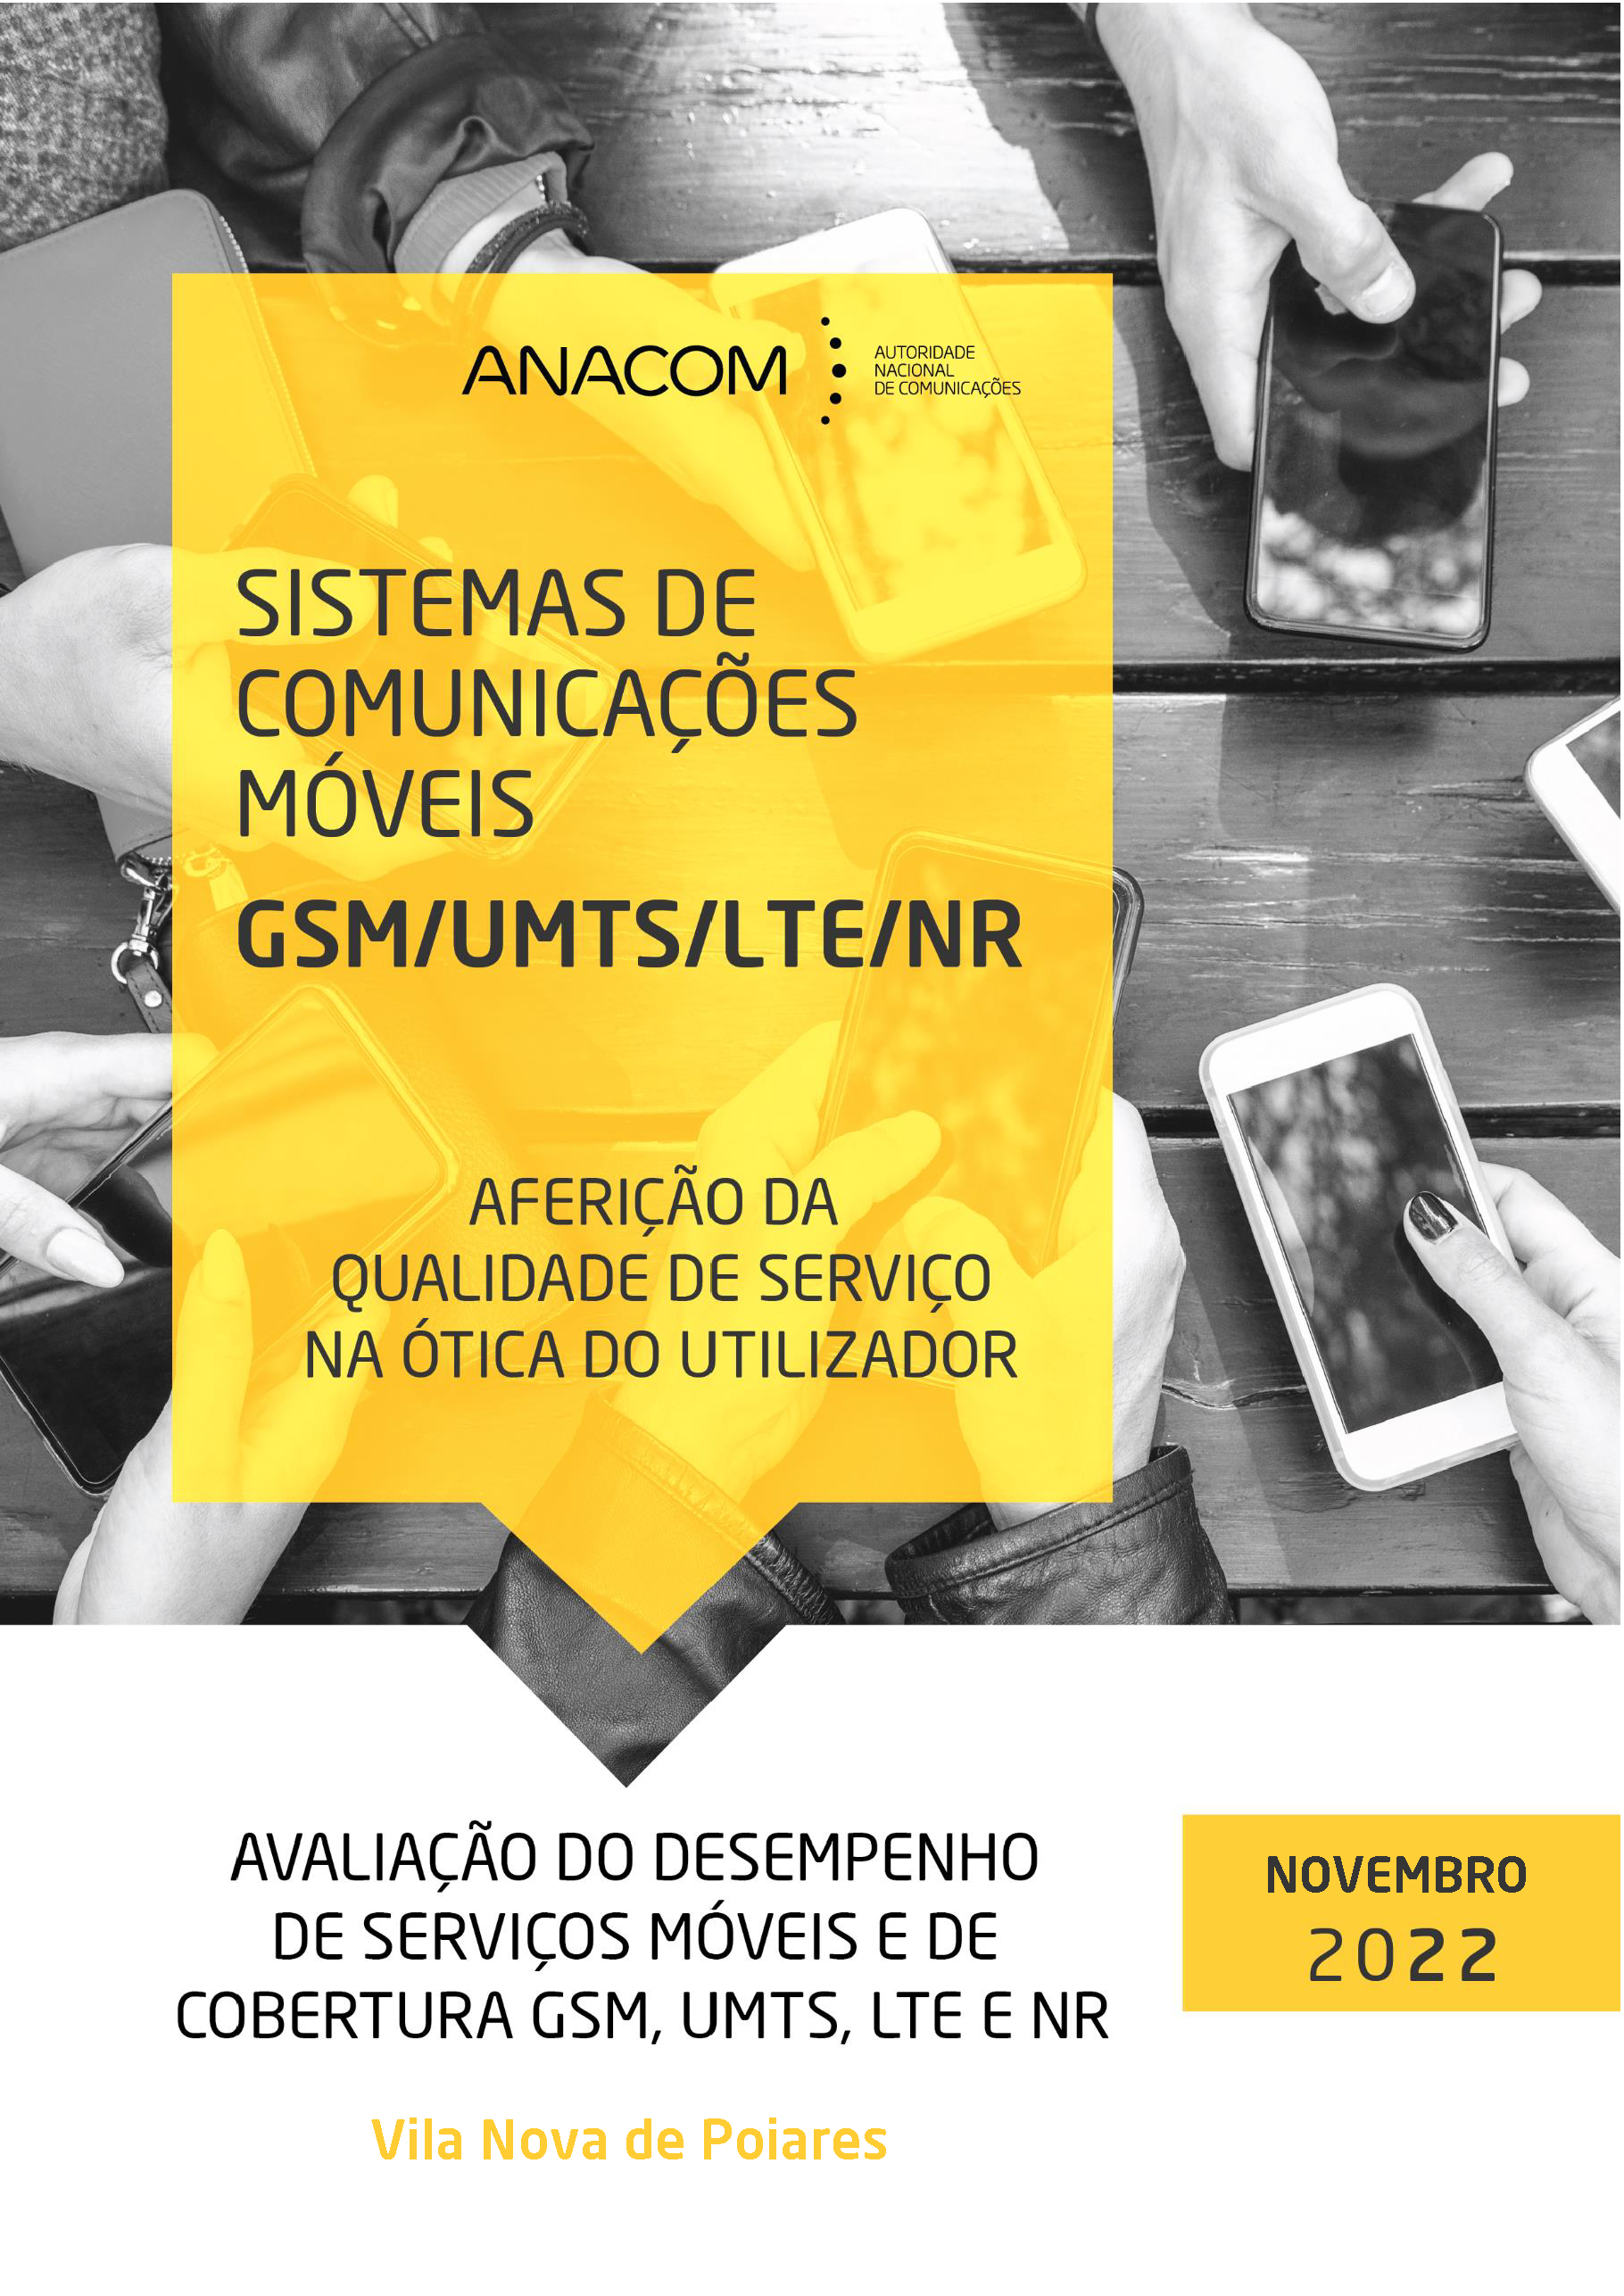 Avaliação do desempenho de serviços móveis e de cobertura GSM, UMTS, LTE e NR no Concelho de Vila Nova de Poiares